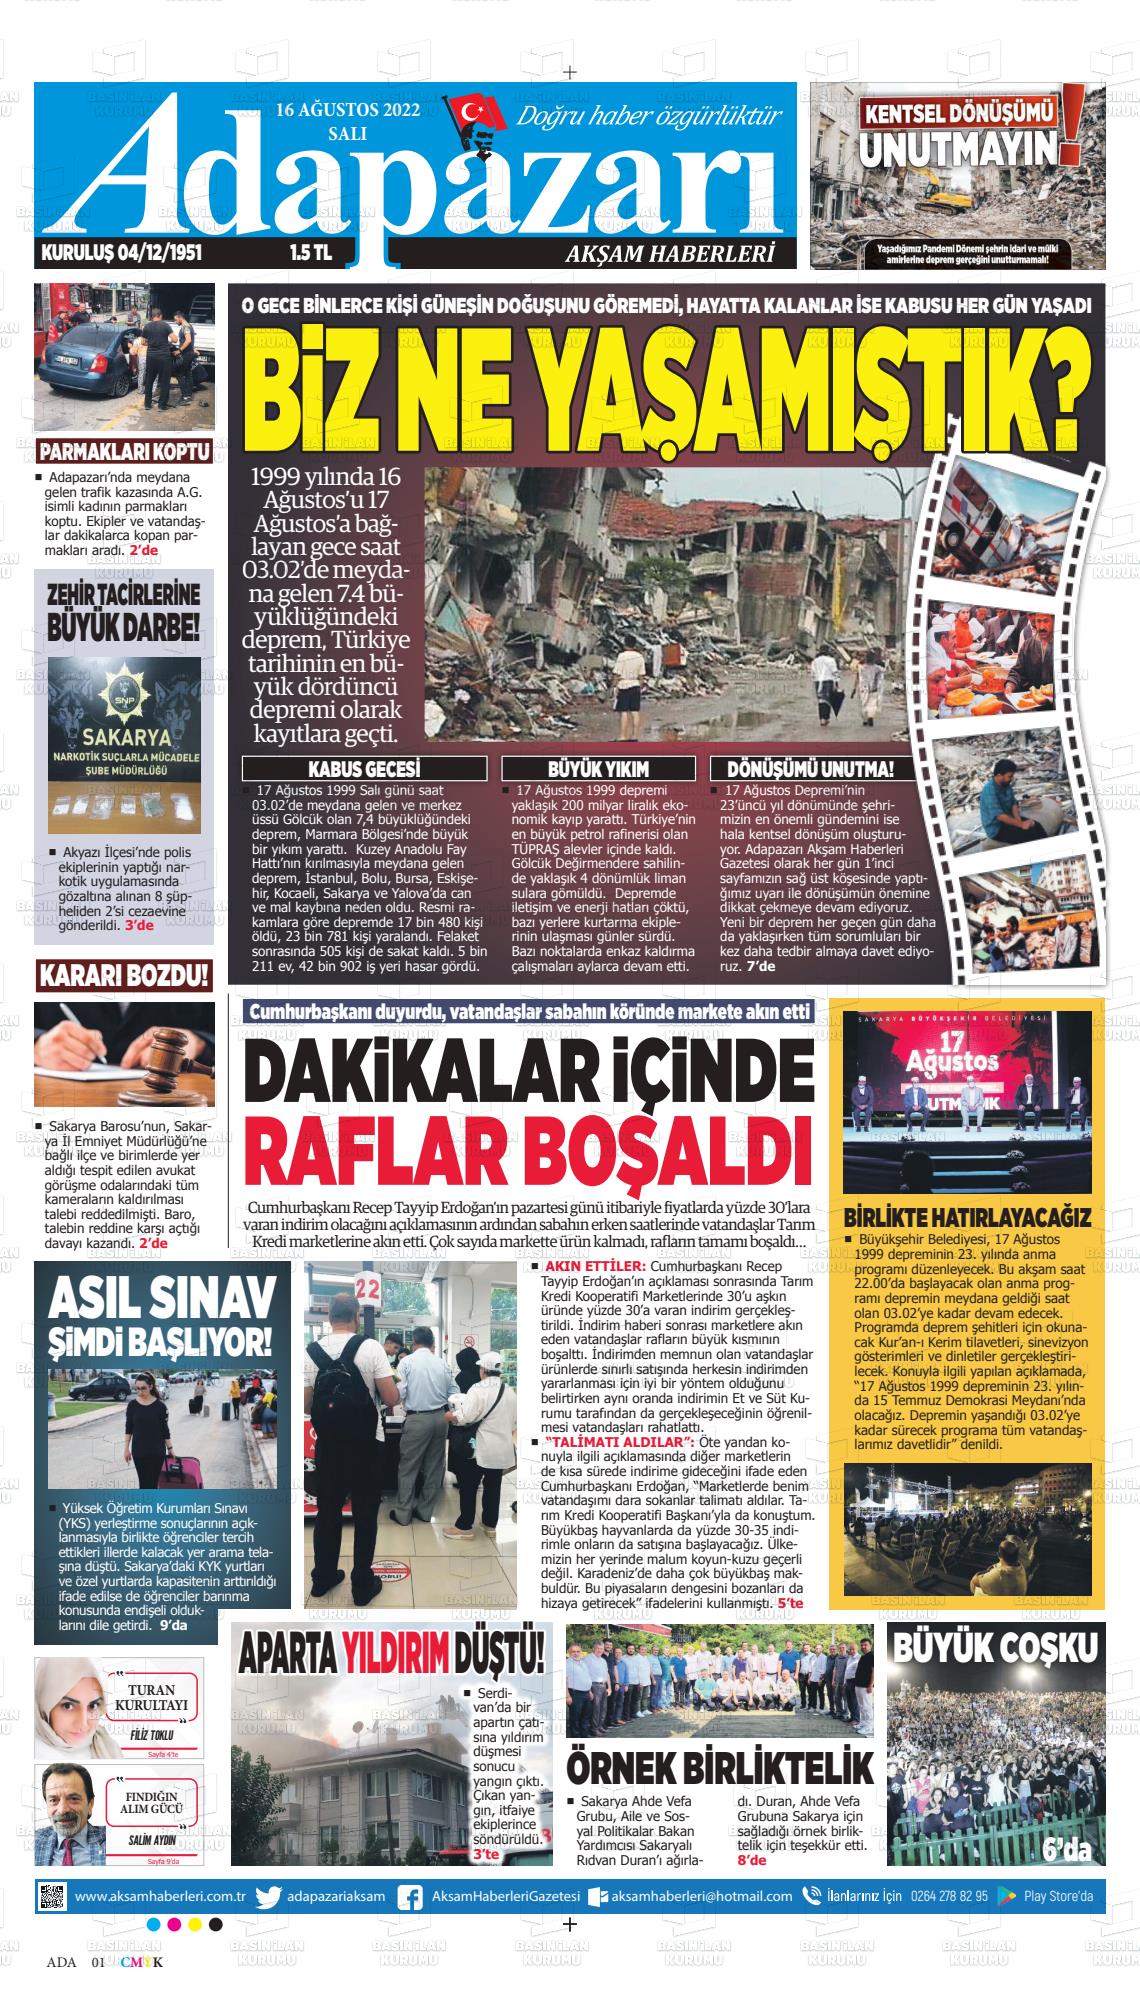 16 Ağustos 2022 Adapazarı Akşam Haberleri Gazete Manşeti